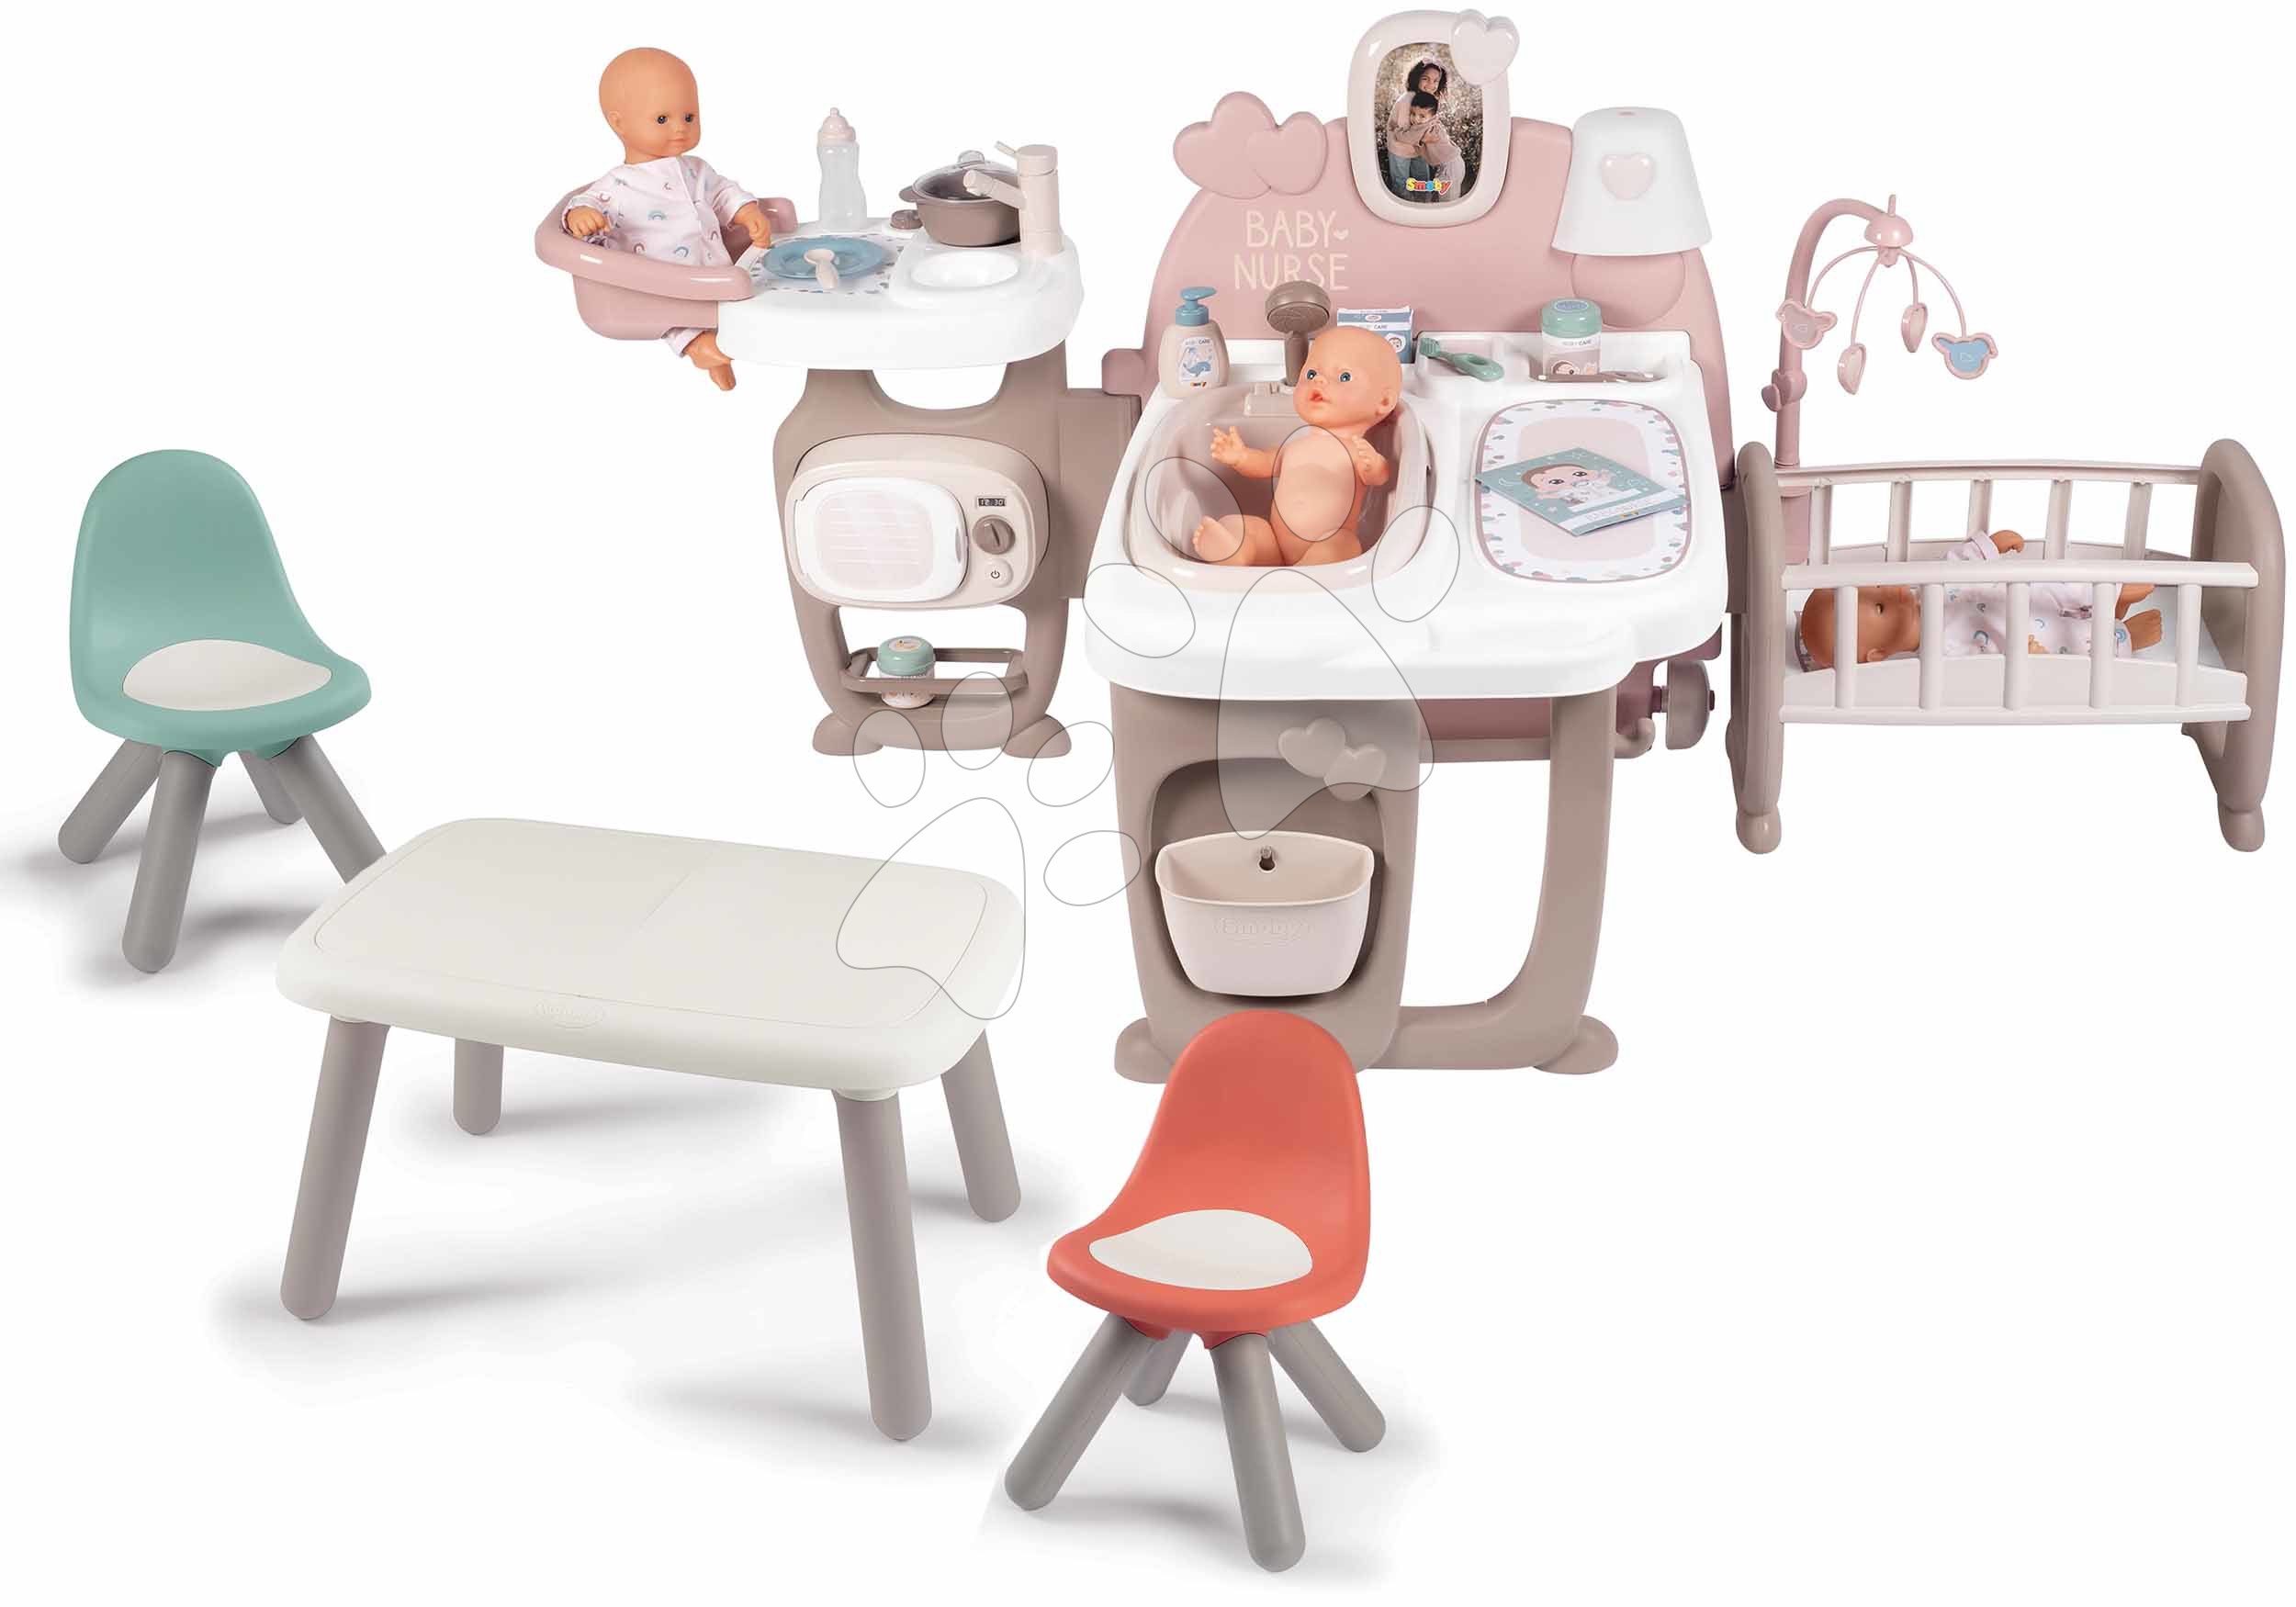 Kućice za lutke setovi - Set kućica za lutku Large Doll's Play Center Natur D'Amour Baby Nurse Smoby i stolić KidTable s 2 stolice KidChair